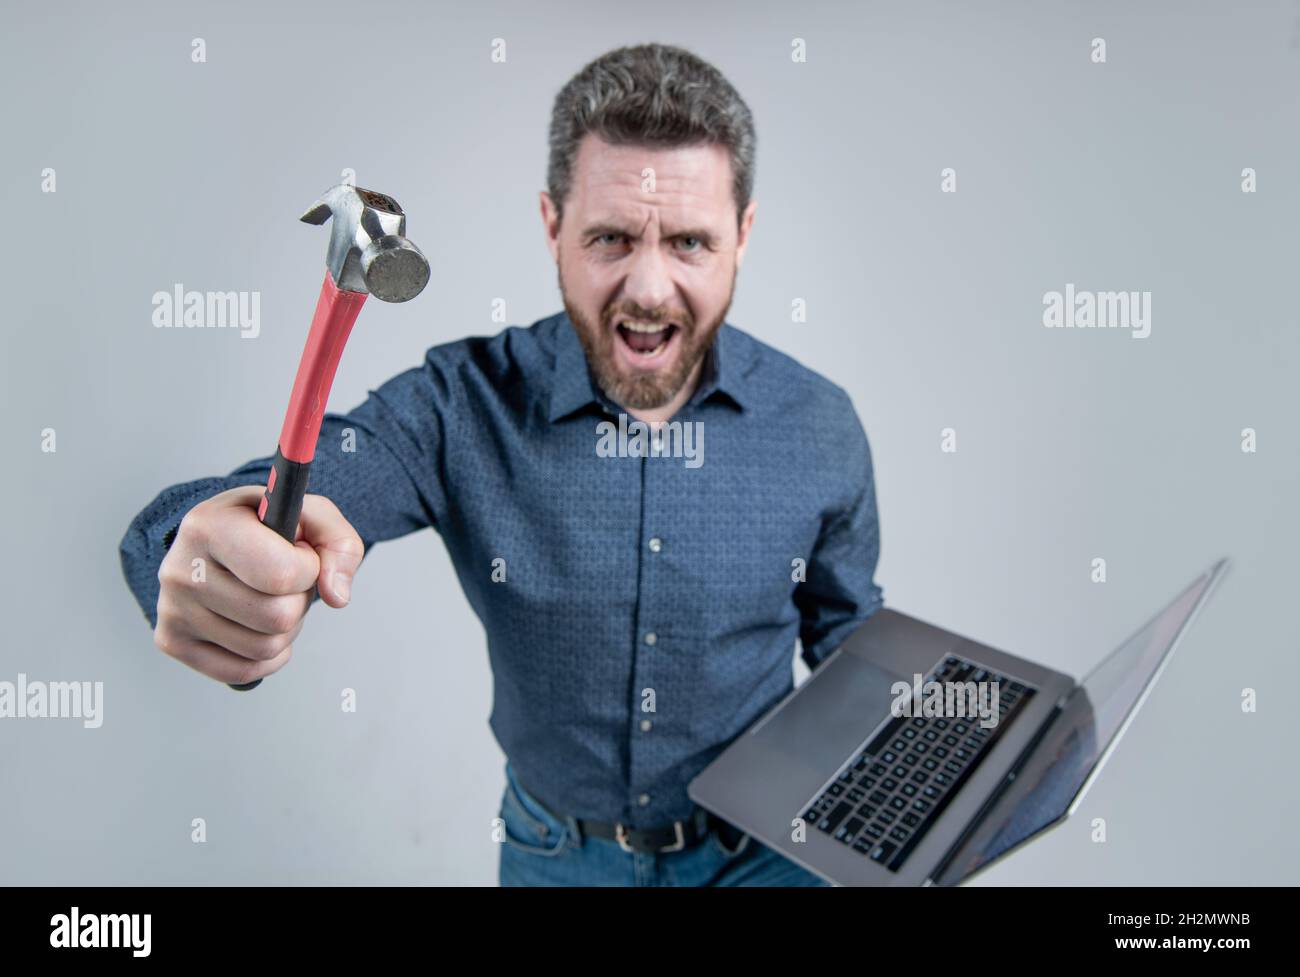 Aufgabe konnte nicht abgeschlossen werden. Wütender Mann, der Hammer und Laptop hält. Computerrage. Wütend Stockfoto